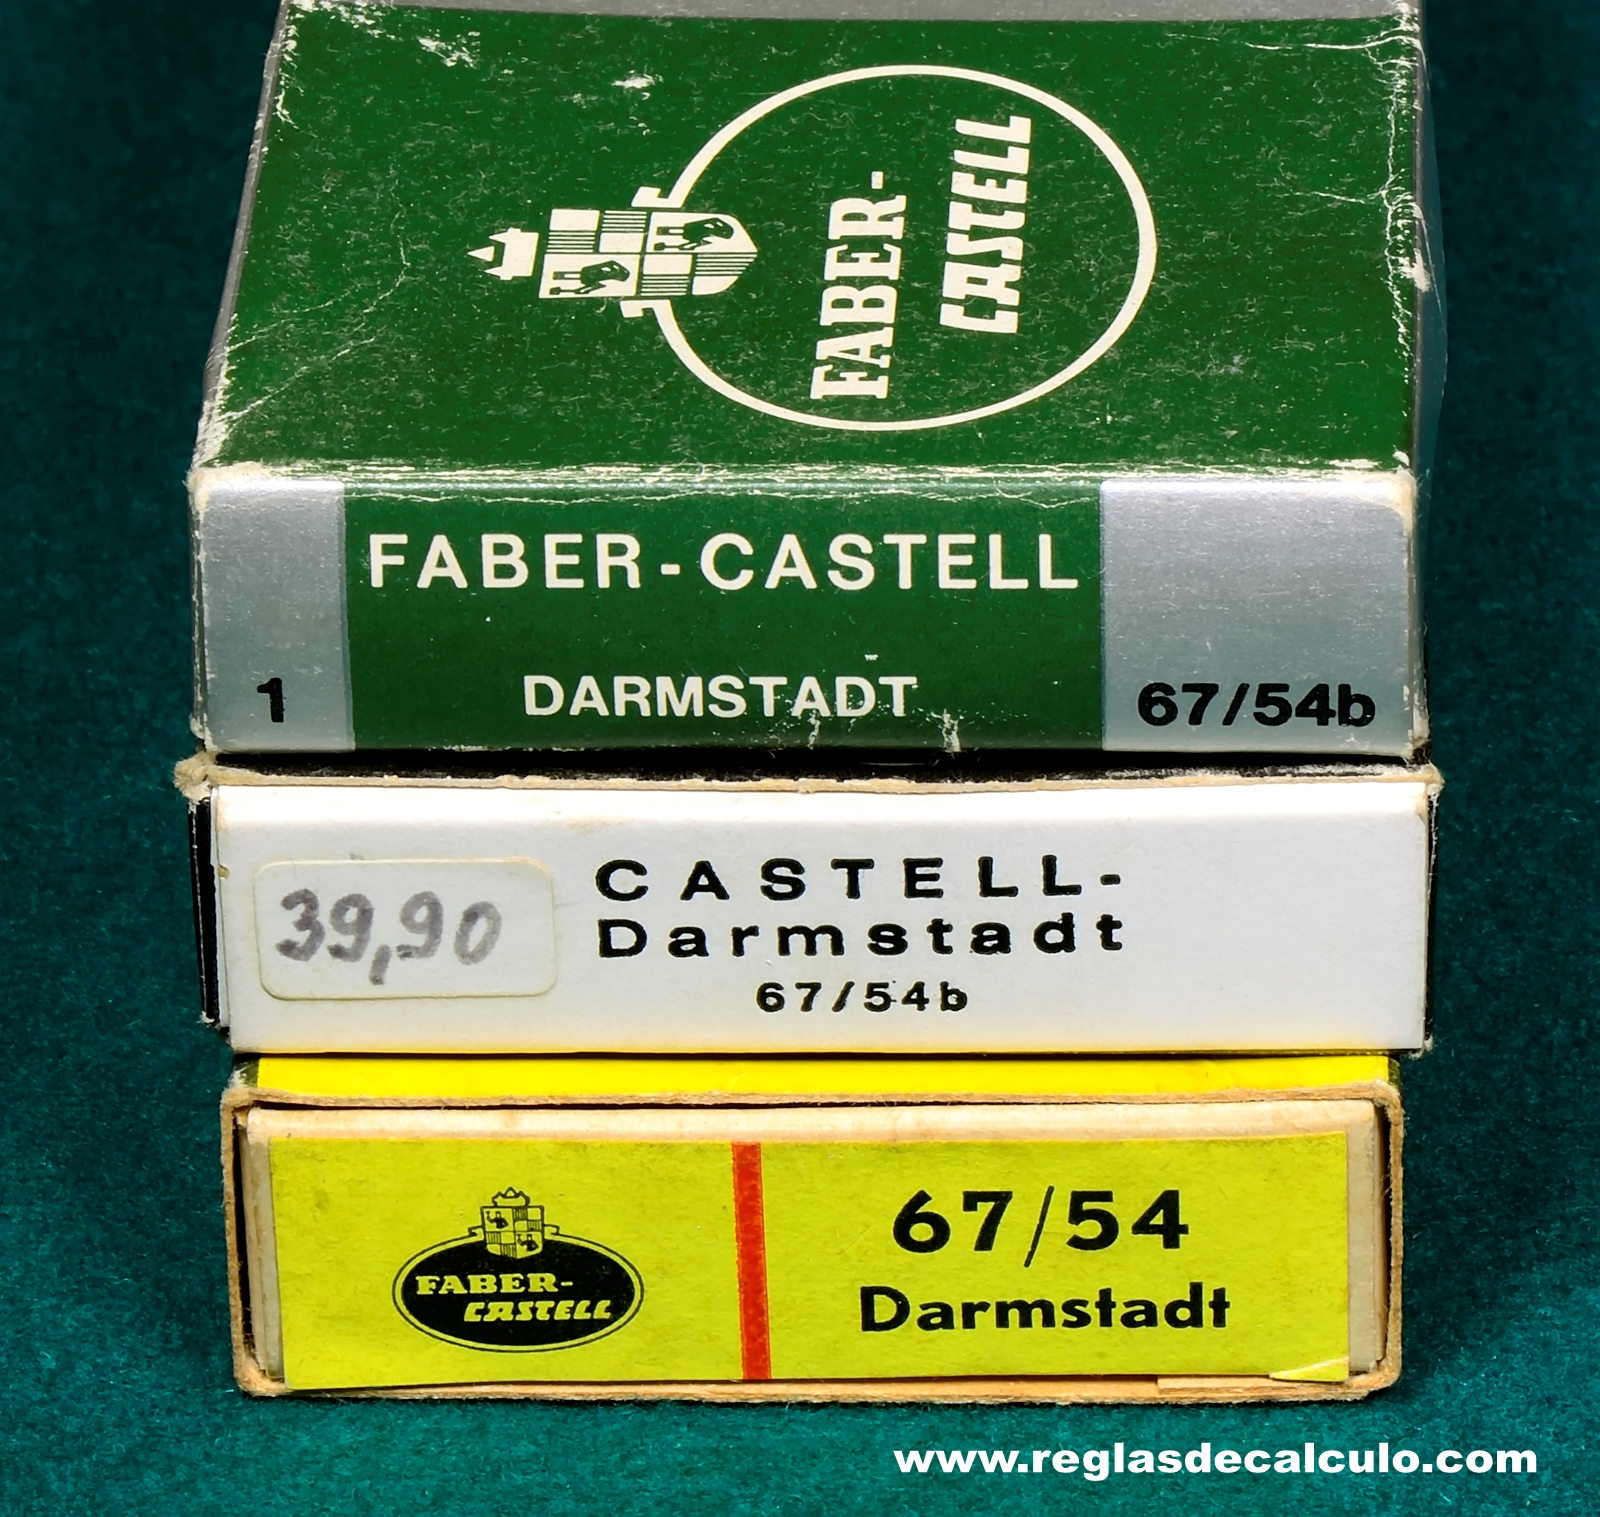 Faber Castell 67/54 Darmstadt Regla de Calculo Slide rule